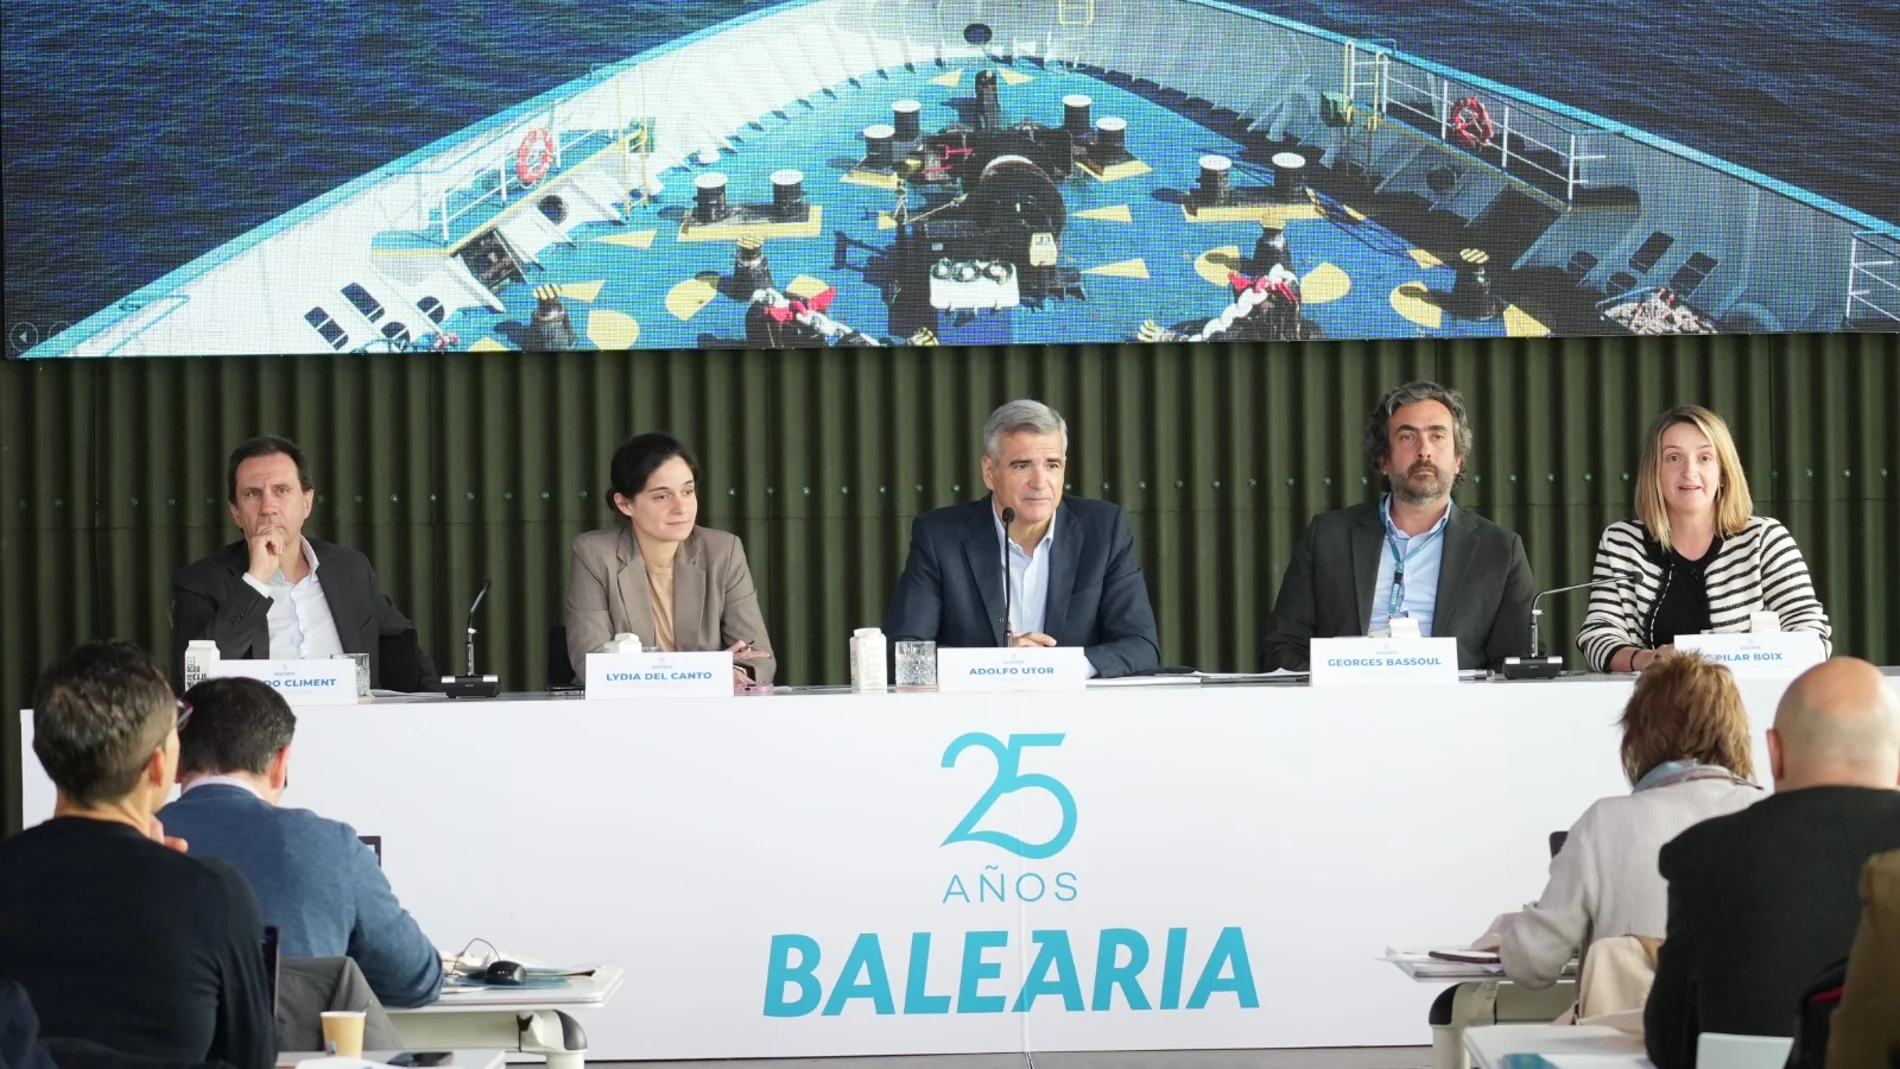 El presidente de Baleària, Adolfo Utor, ha presentado los resultados de la naviera.